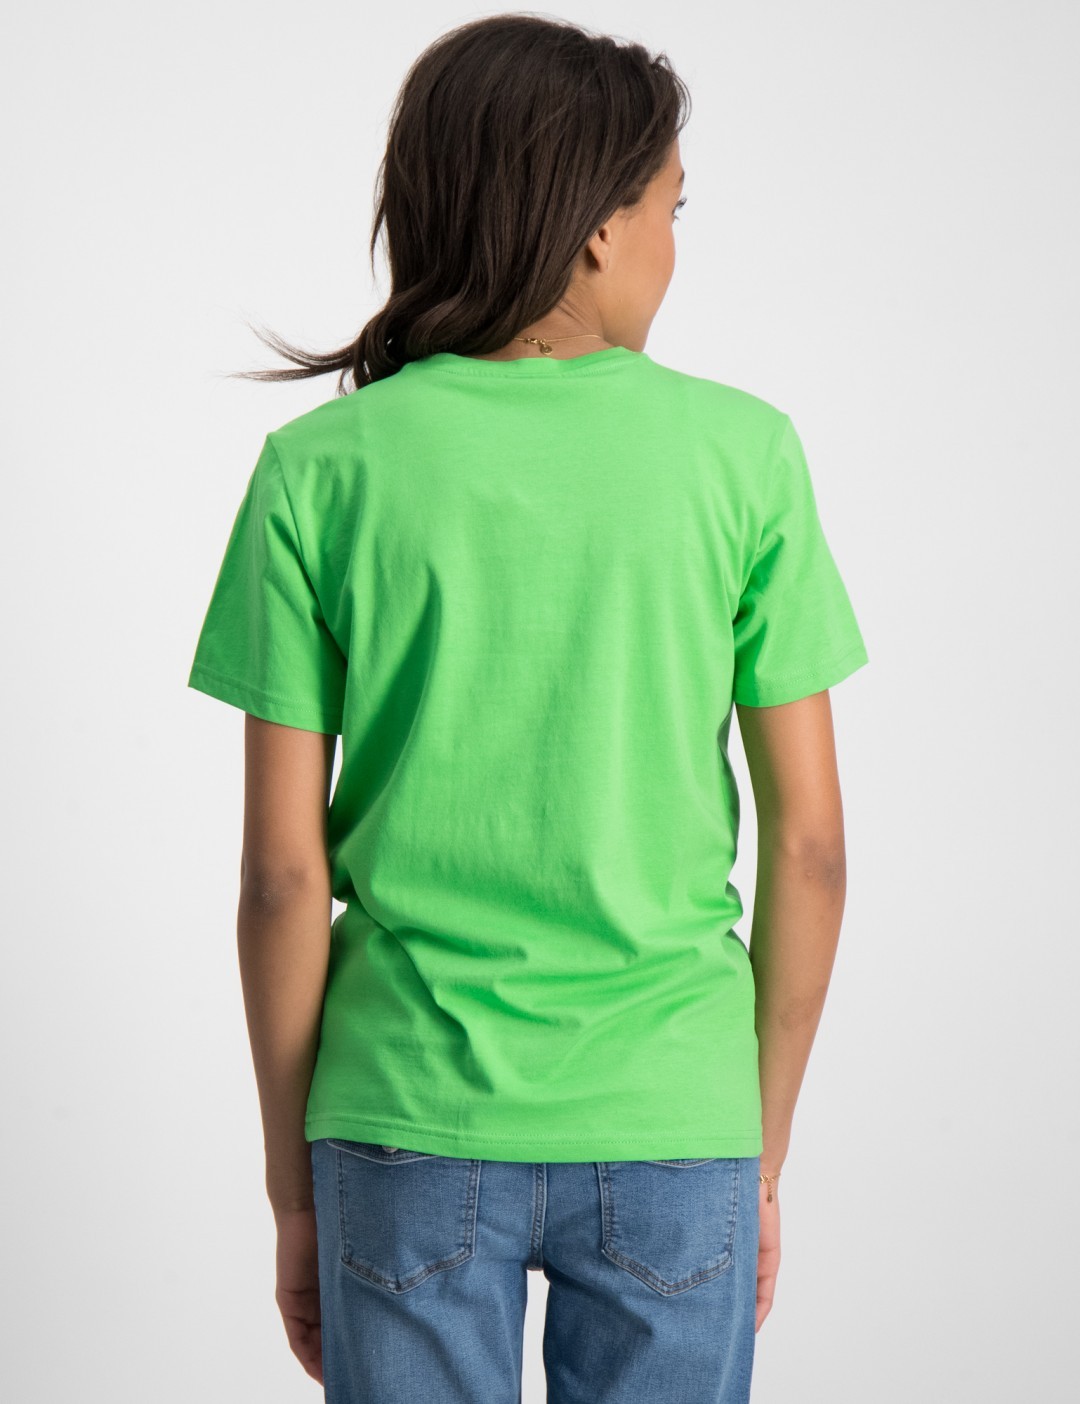 Grün Crewneck Store T-Shirt | Kids Mädchen Brand für